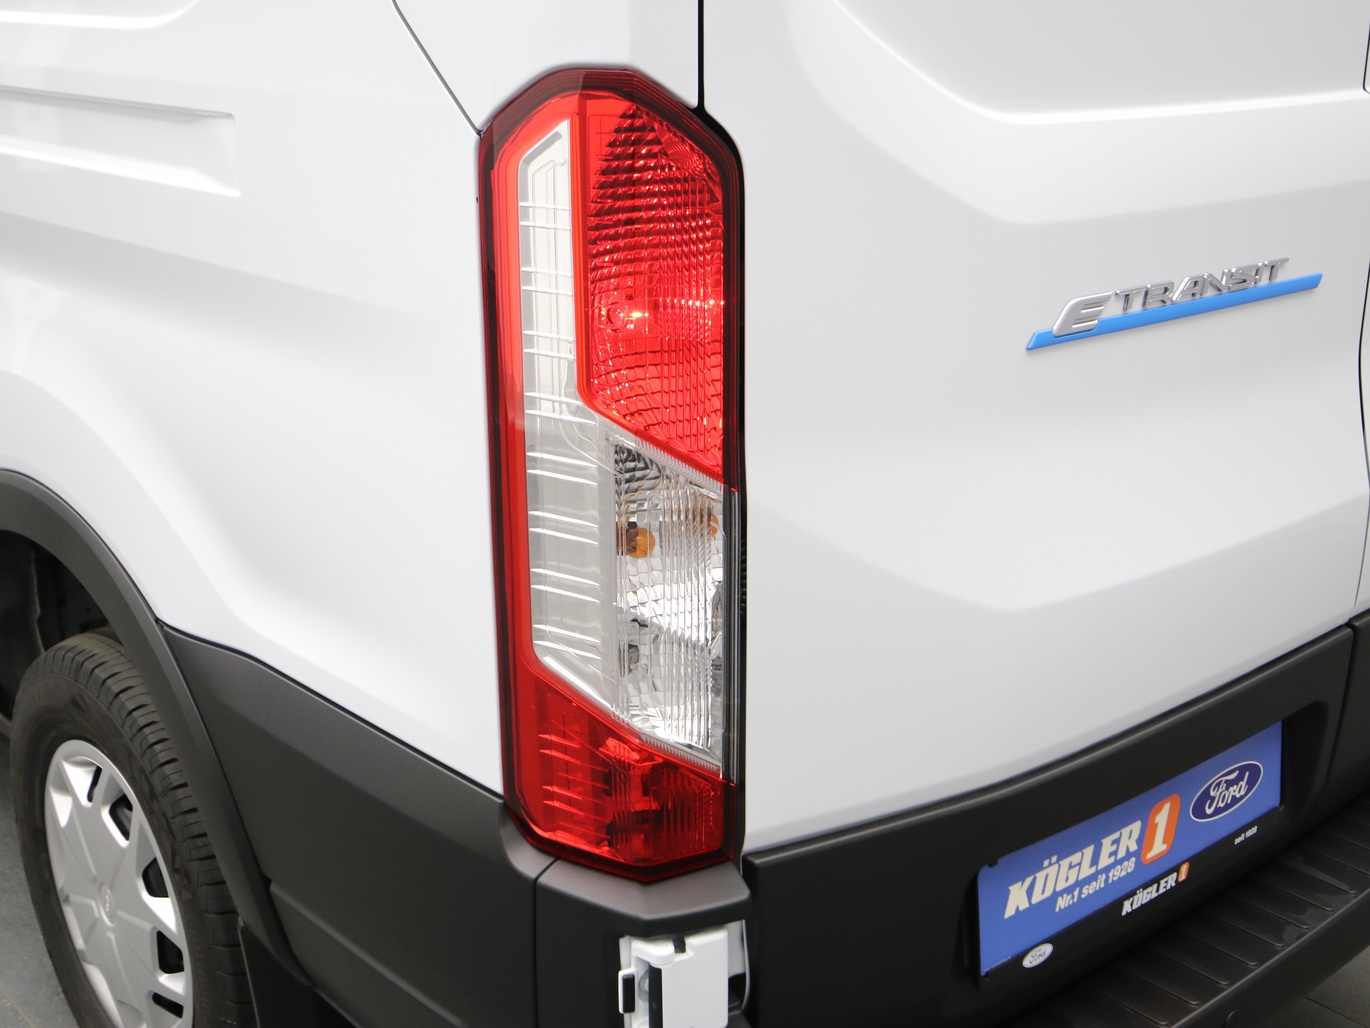  Ford E-Transit Kasten 350 L3 Trend Pro Power in Weiss 